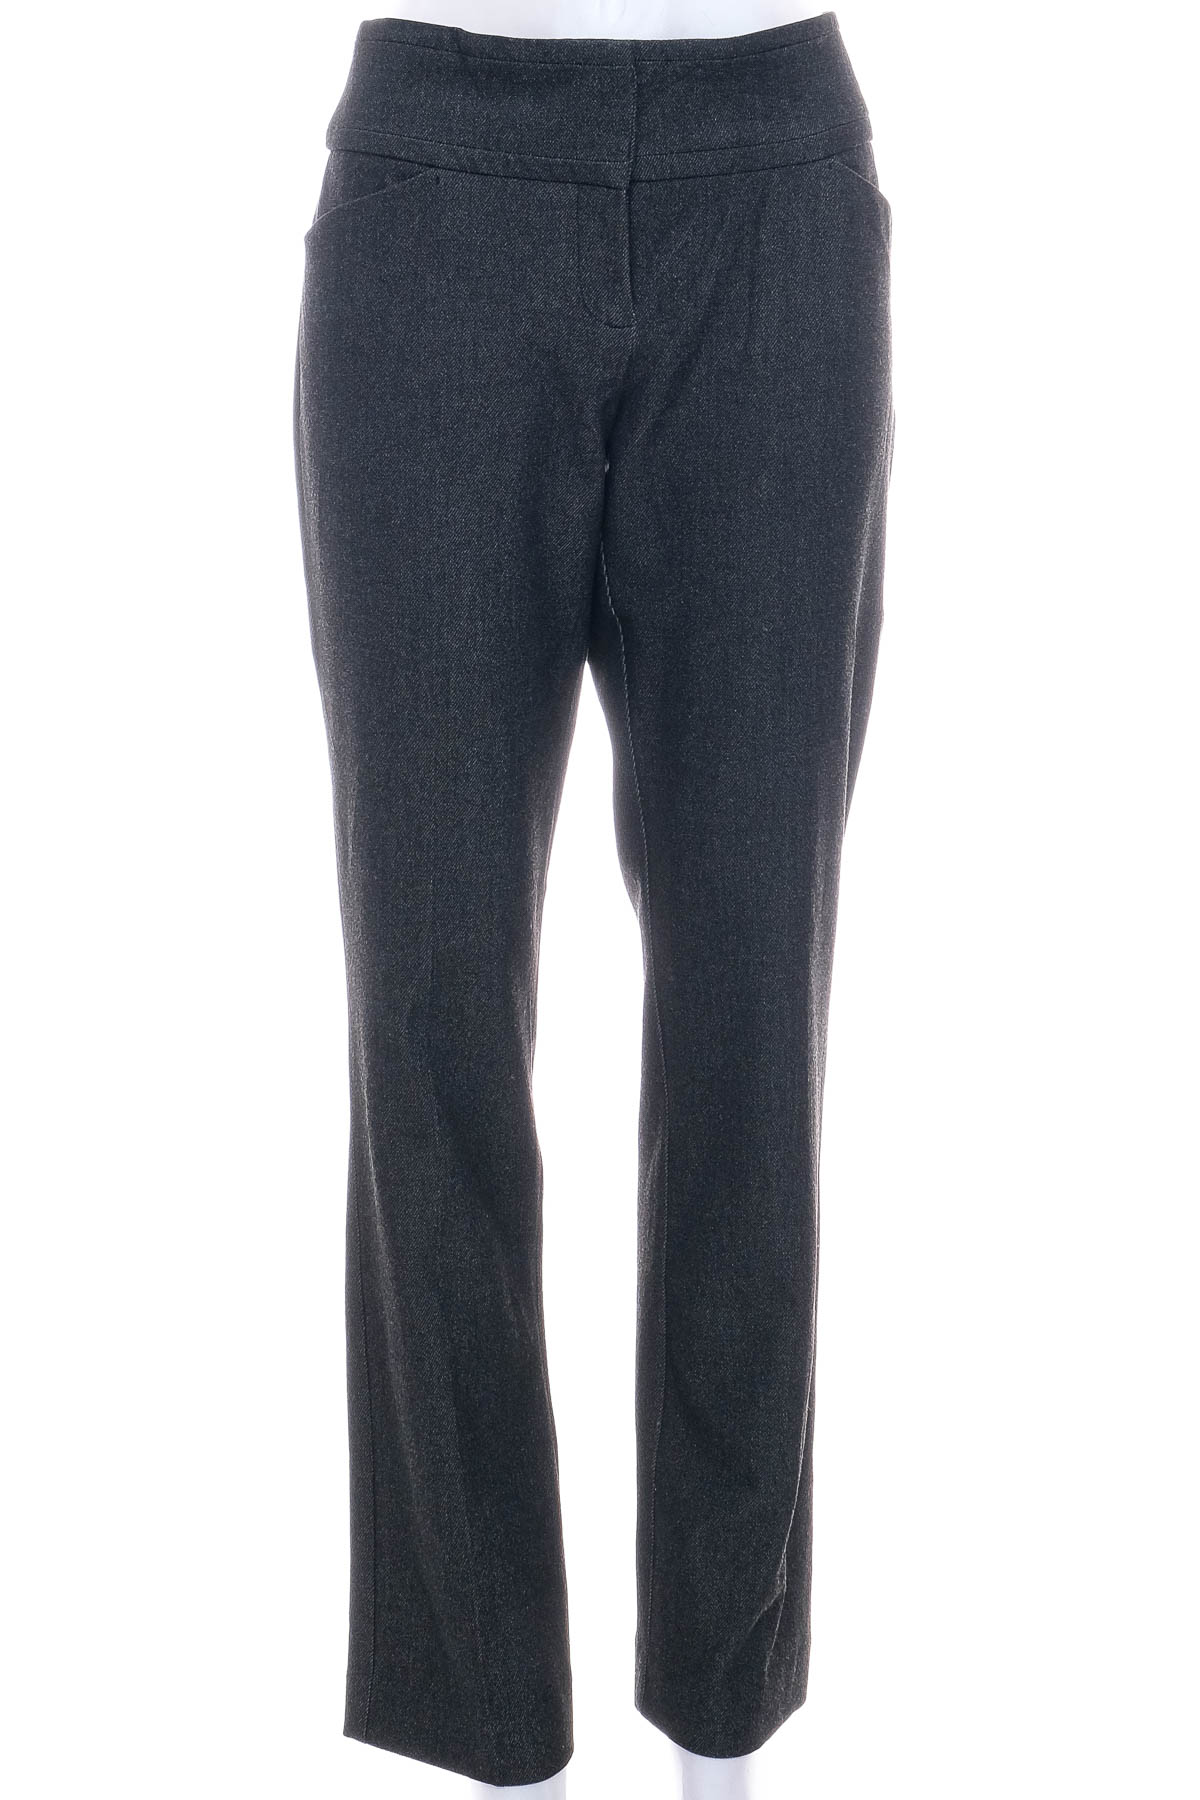 Spodnie damskie - New York & Company - 0